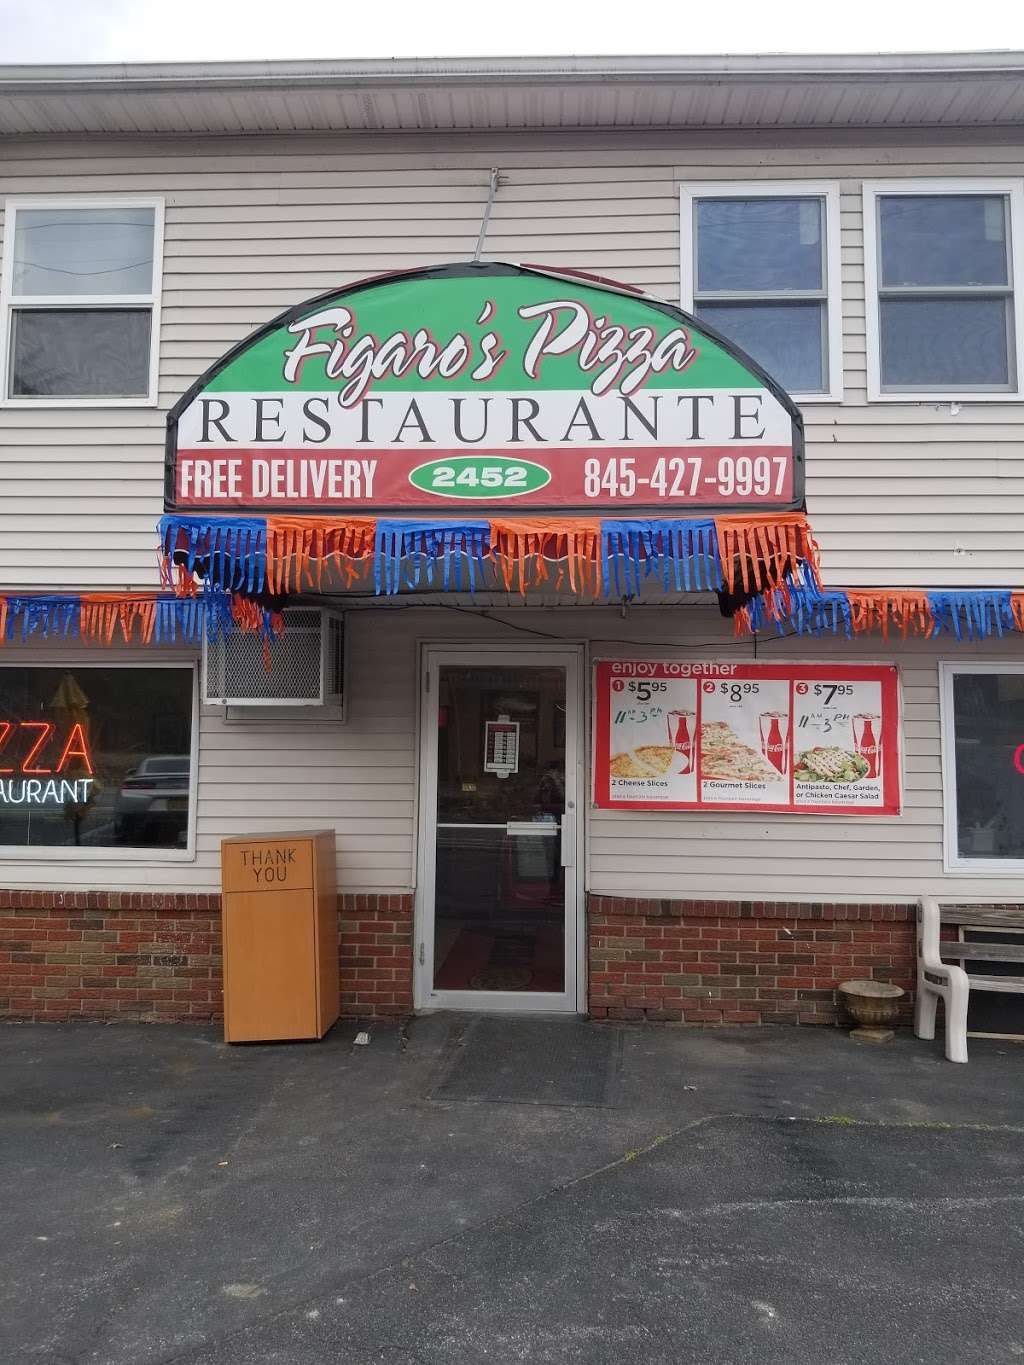 Figaros Pizzeria Restaurant | 2452 NY-207, Campbell Hall, NY 10916 | Phone: (845) 427-9997